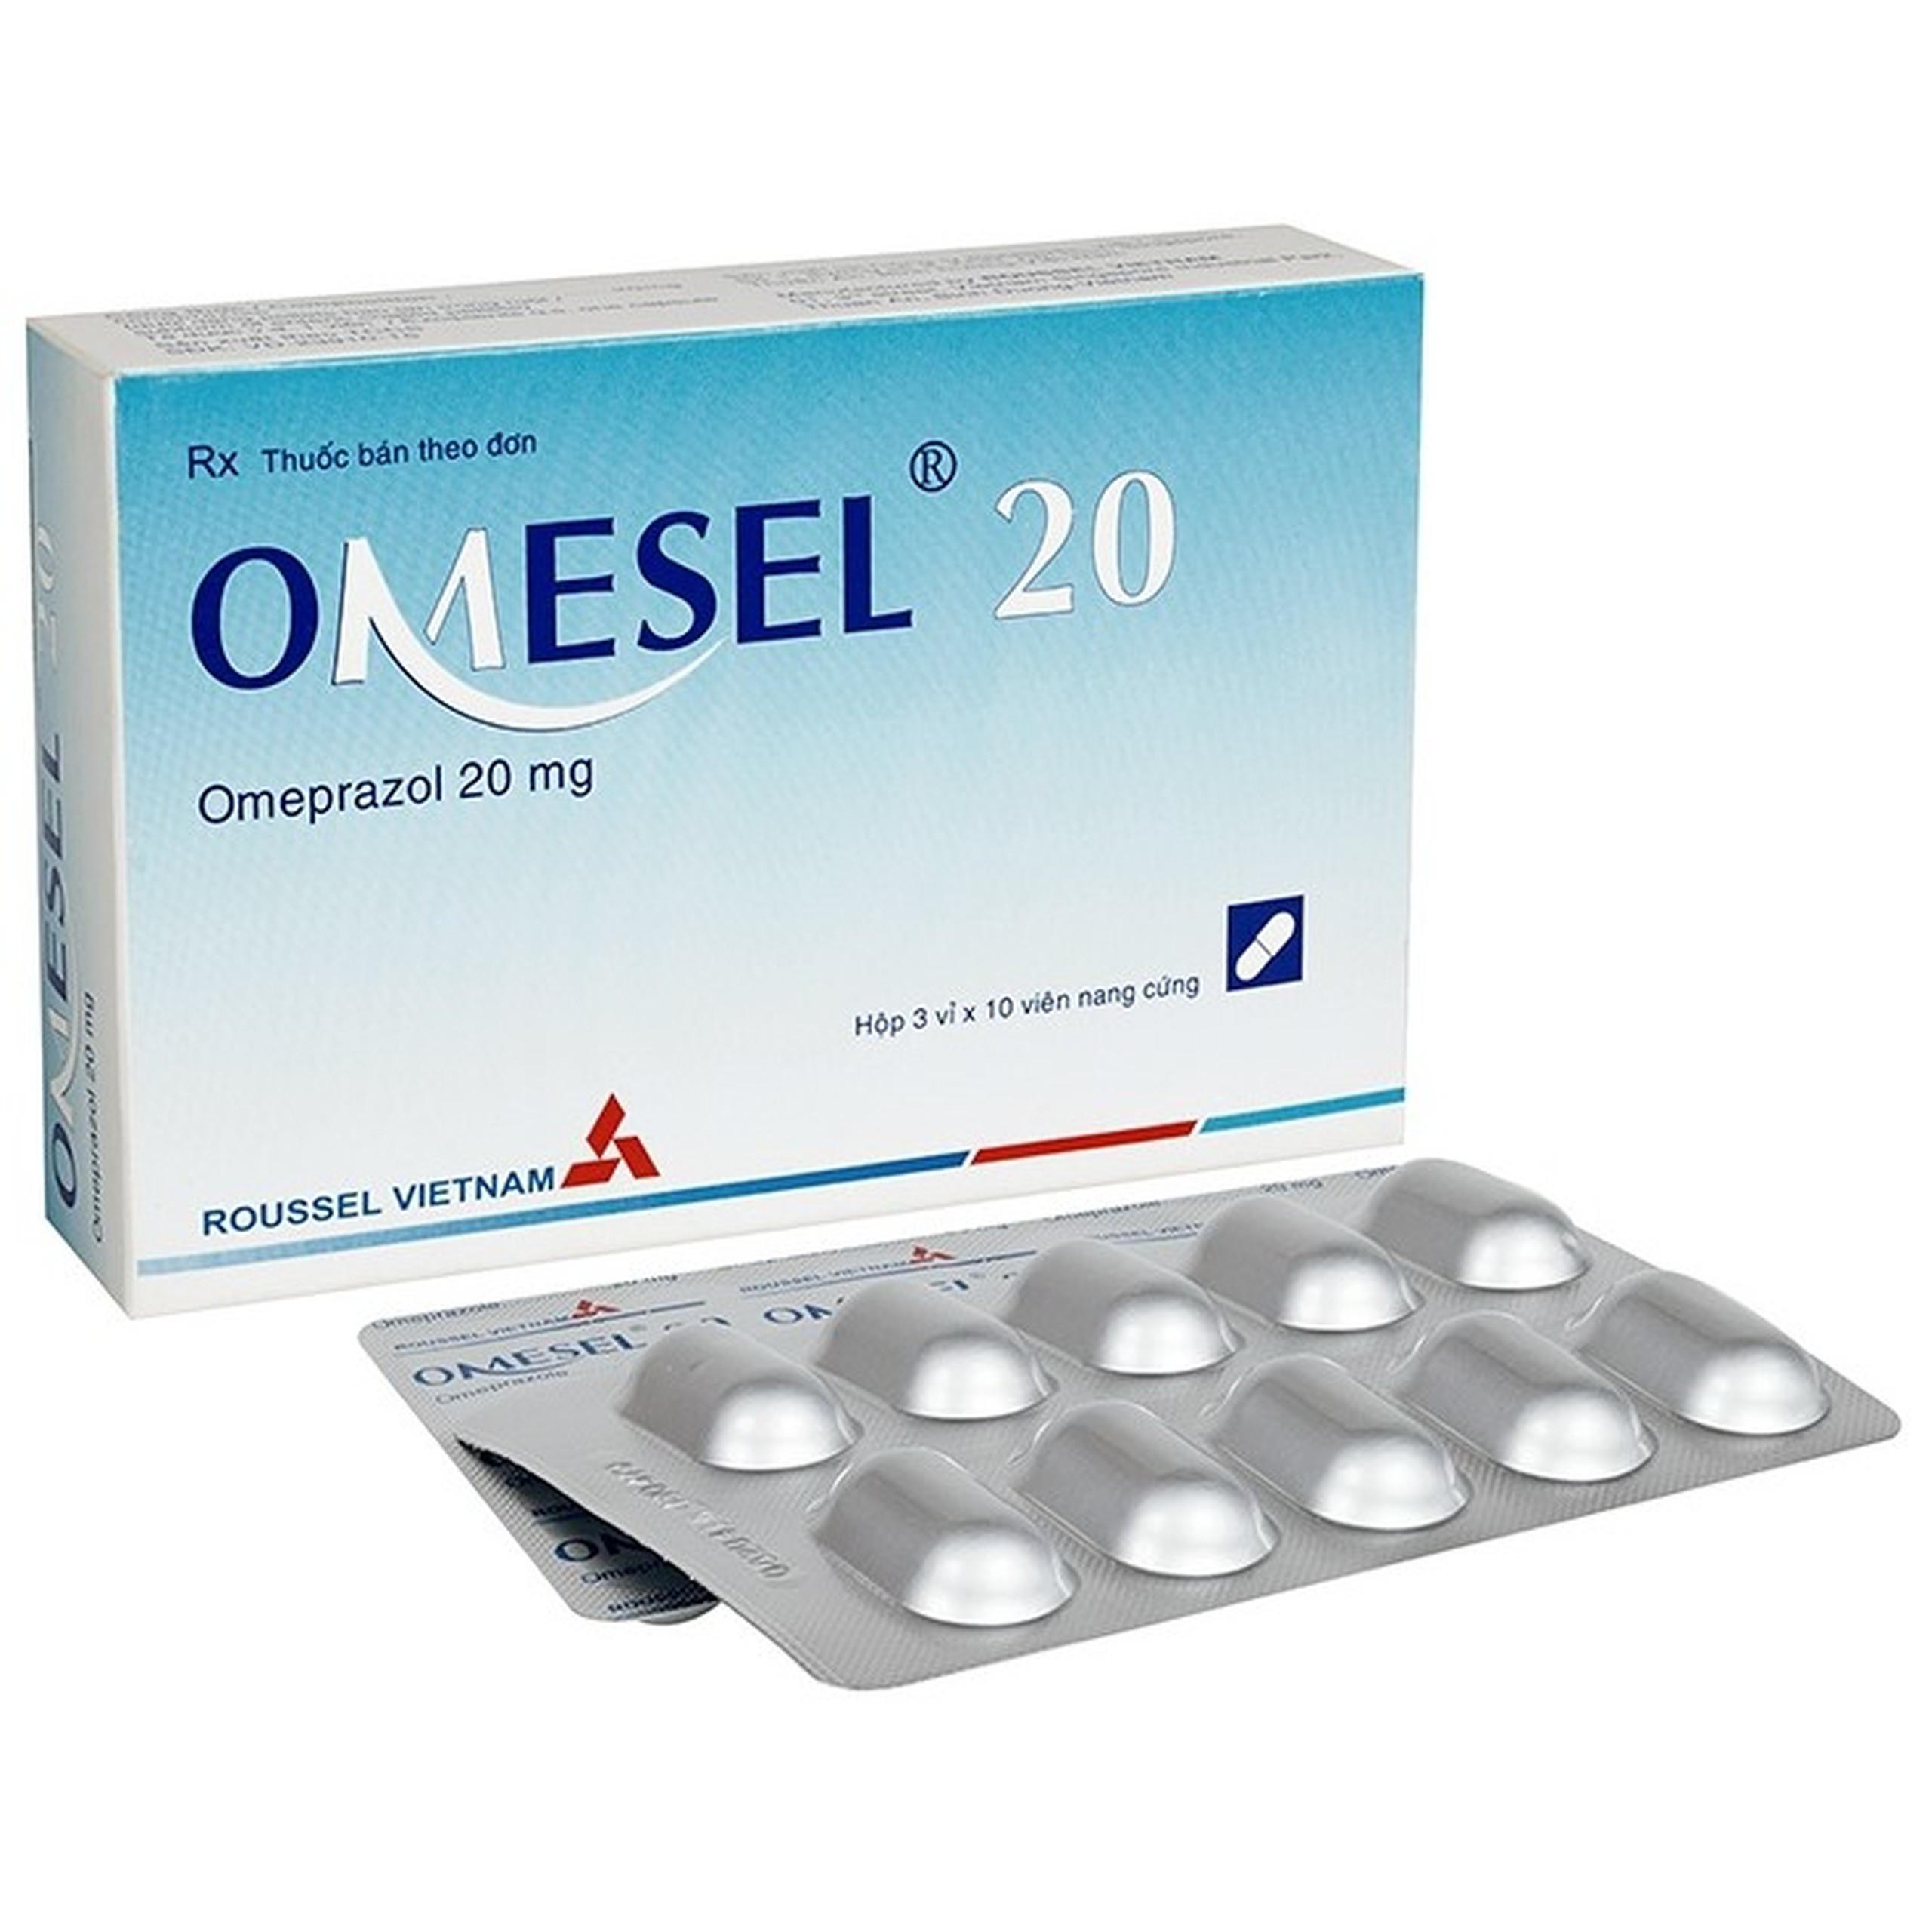 Viên nang cứng Omesel 20 Roussel điều trị và phòng ngừa tái phát loét dạ dày (3 vỉ x 10 viên)